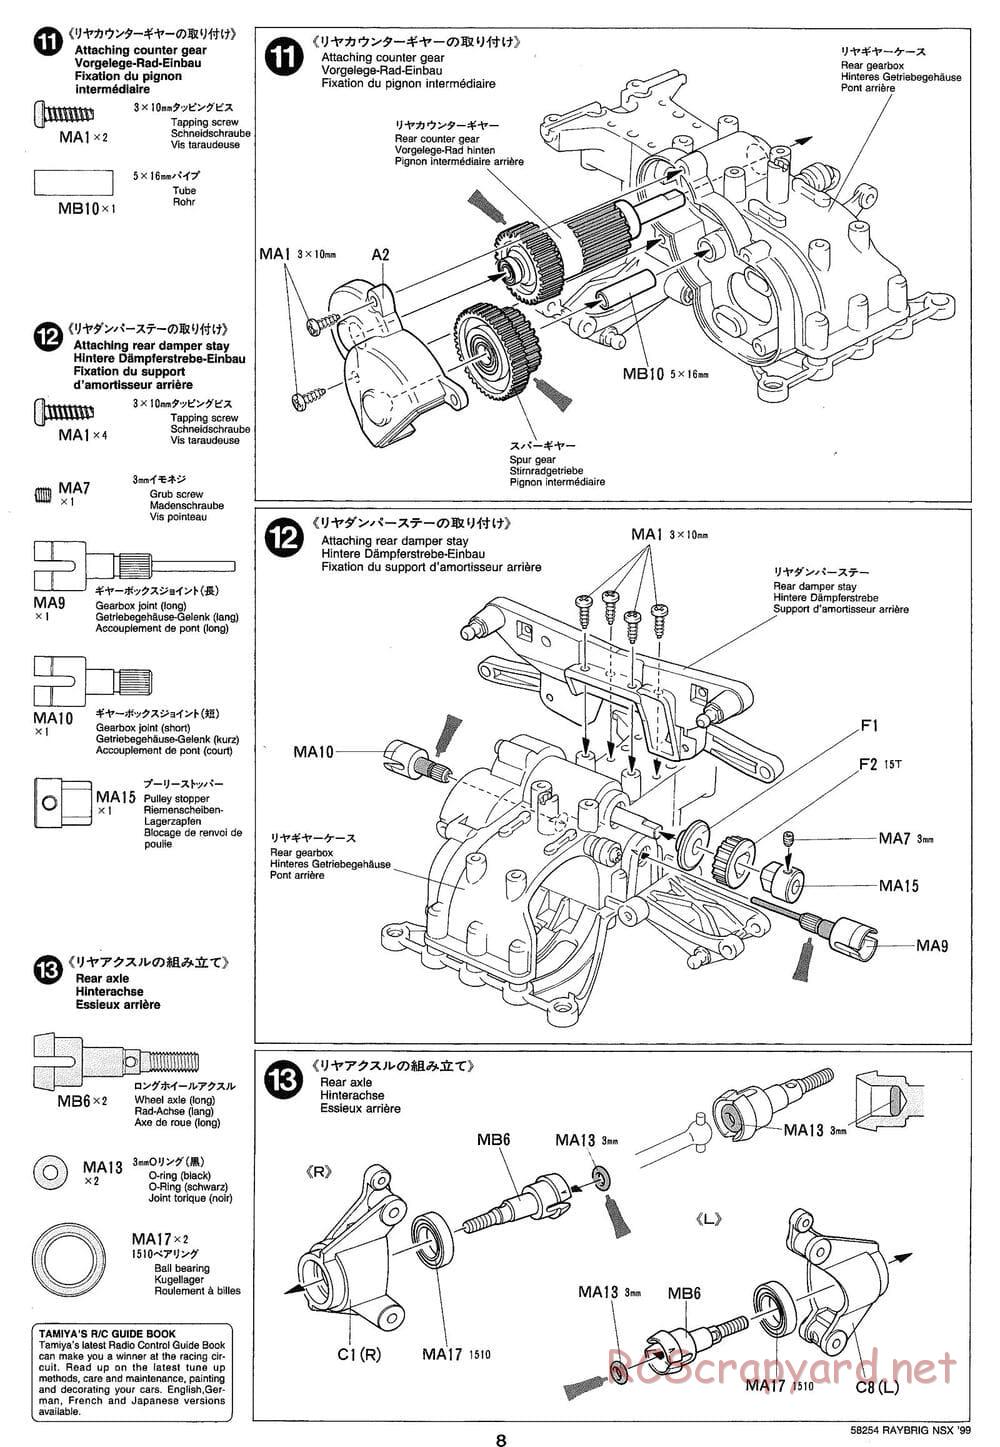 Tamiya - Raybrig NSX 99 - TA-03R Chassis - Manual - Page 8